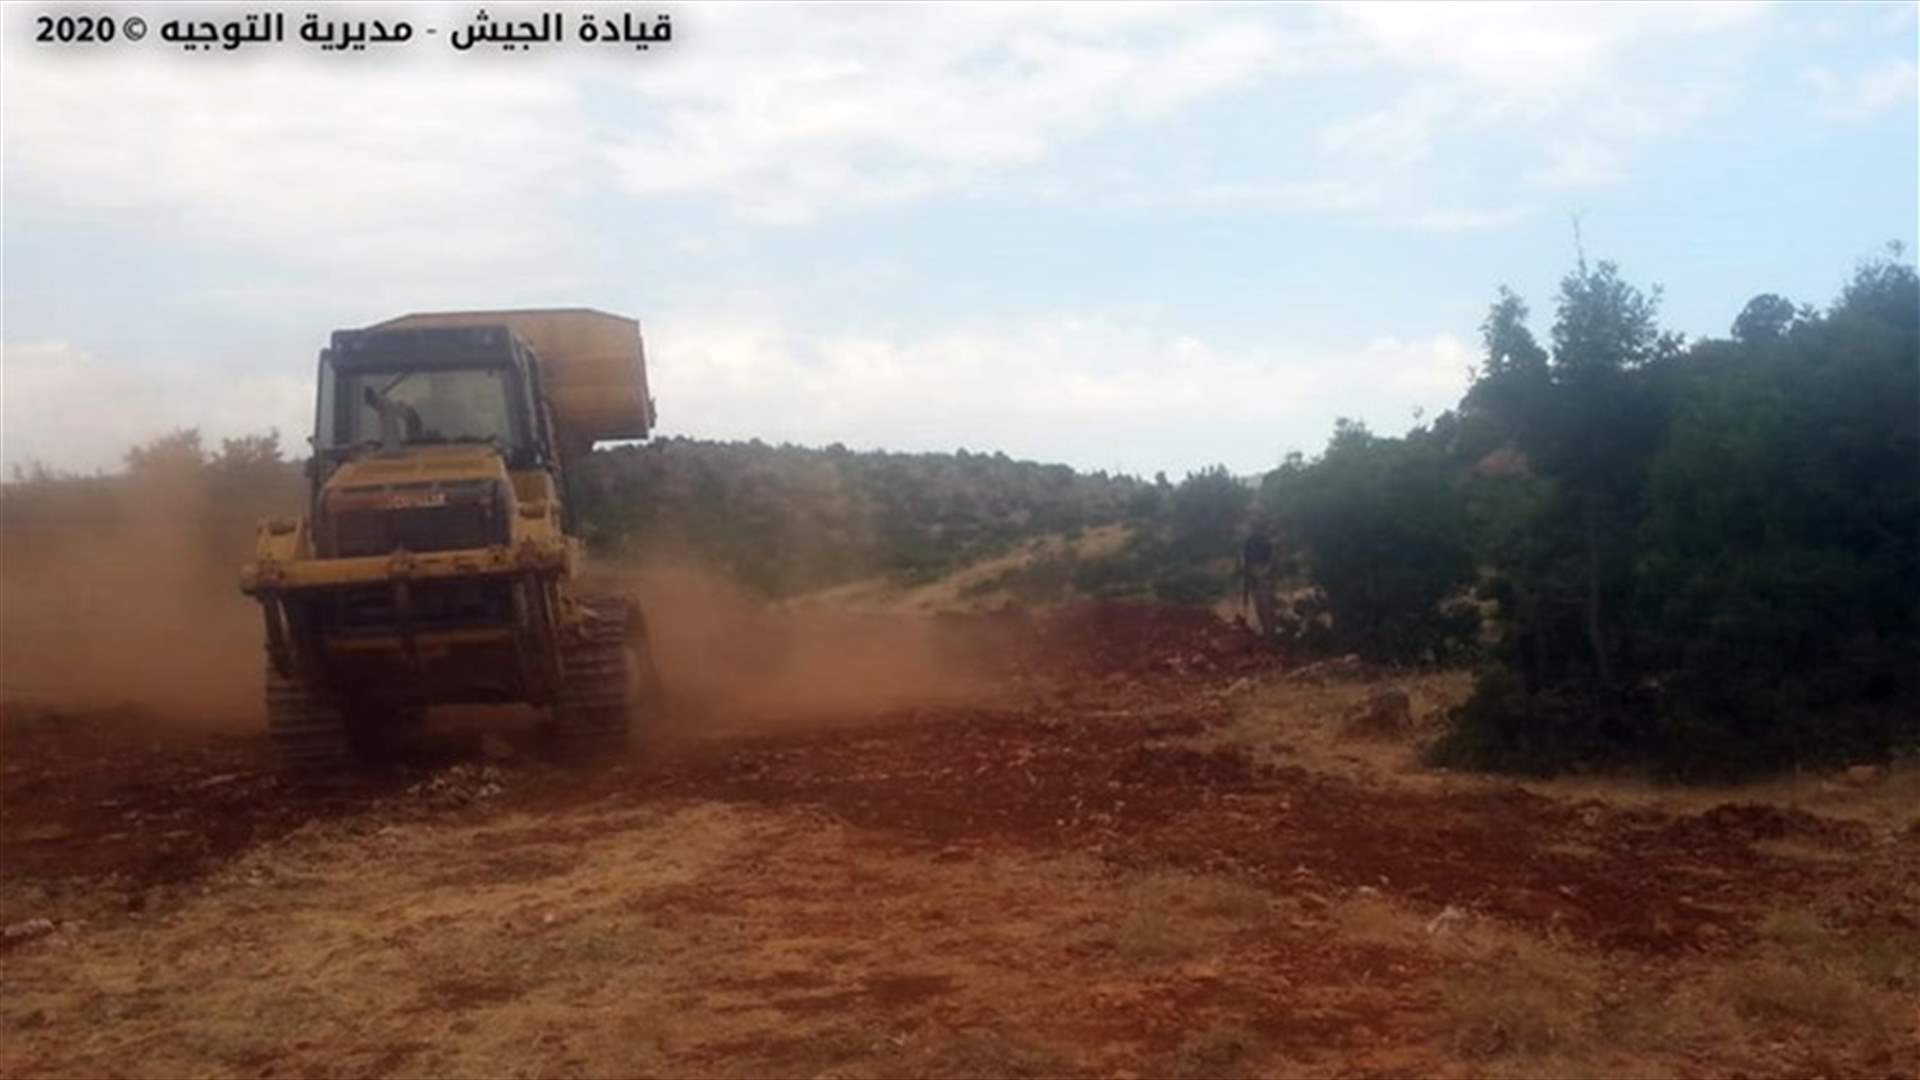 الجيش: إقفال طرق ومعابر تُستخدم للتهريب في منطقة الهرمل... (صور)